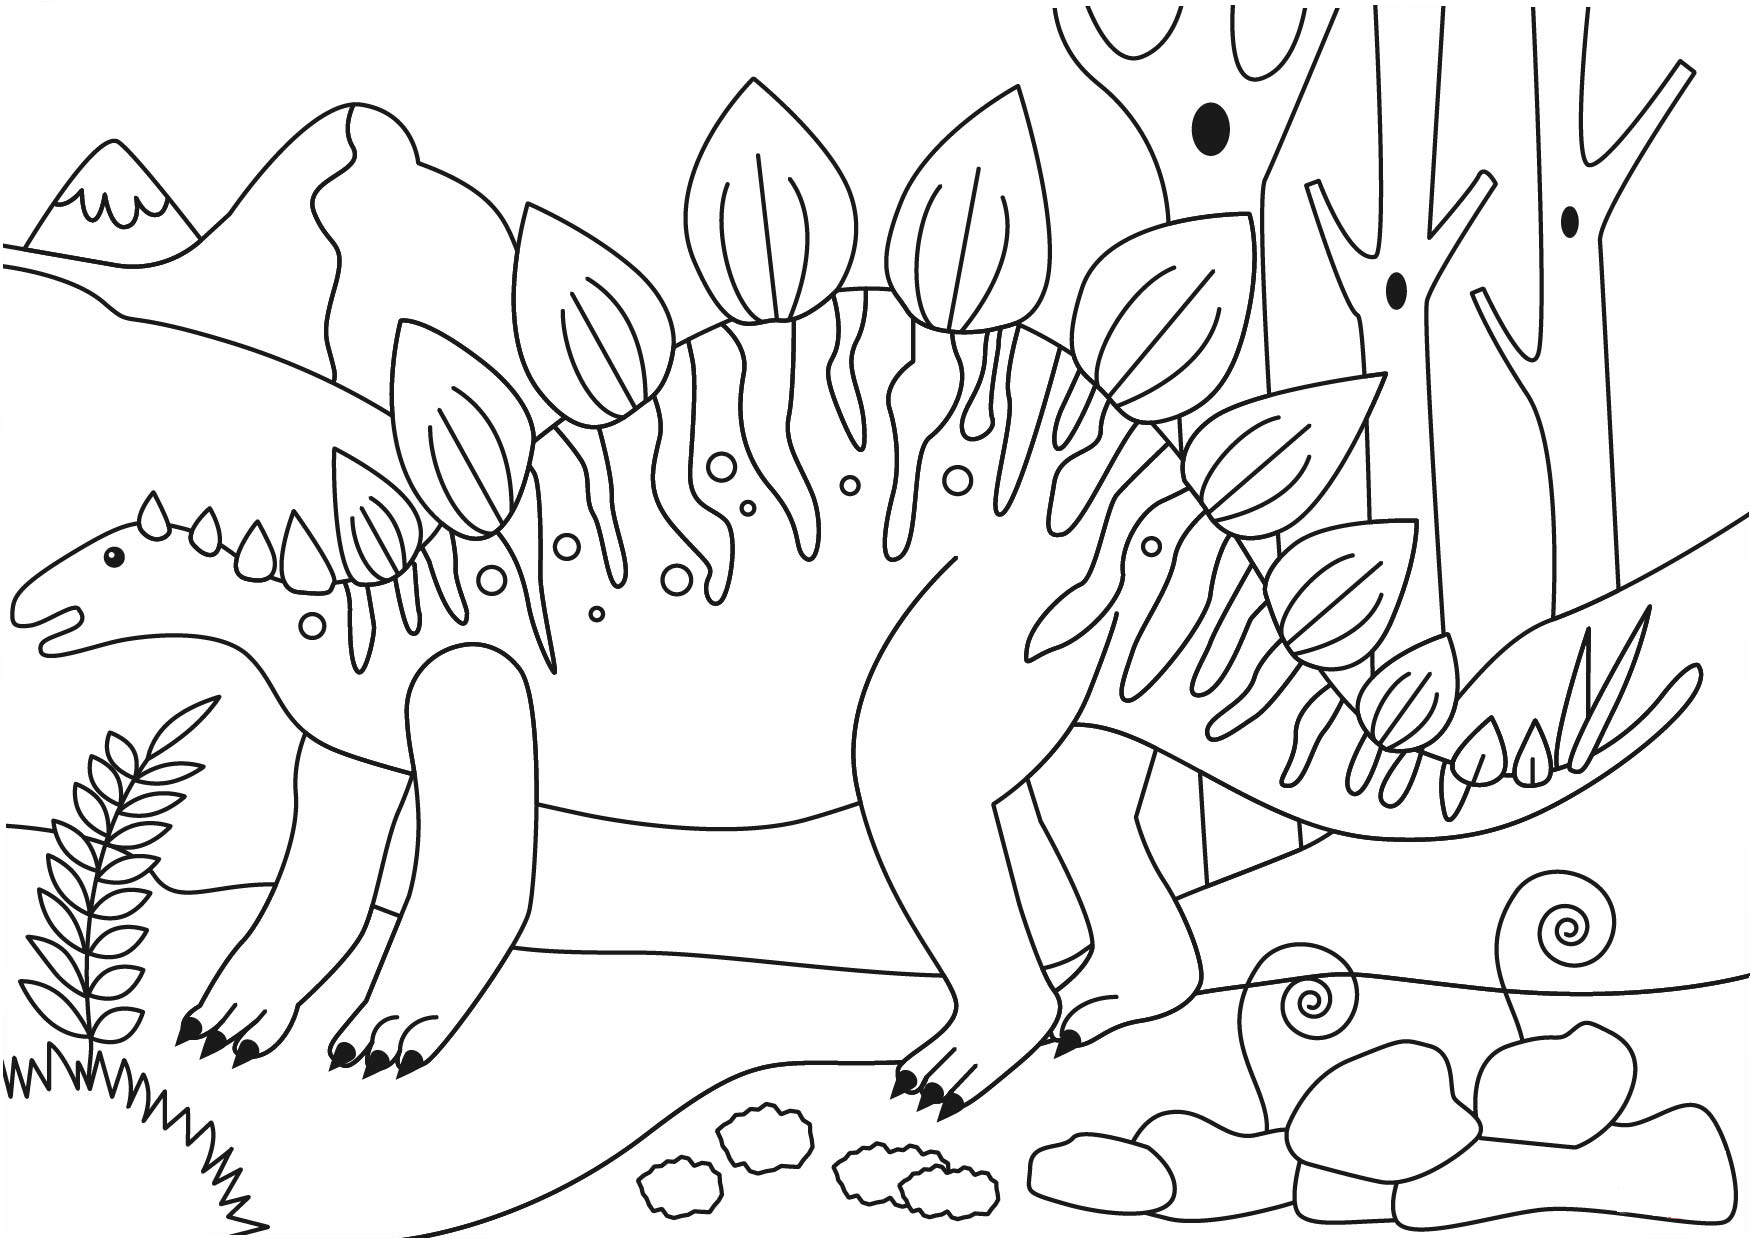 Раскраски для детей 6 7 динозавров. Раскраска динозавр Стегозавр. Раскраска мир Юрского периода Стегозавр. Стегозавр раскраска для детей. Динозавры Стегозавр раскраски для детей.